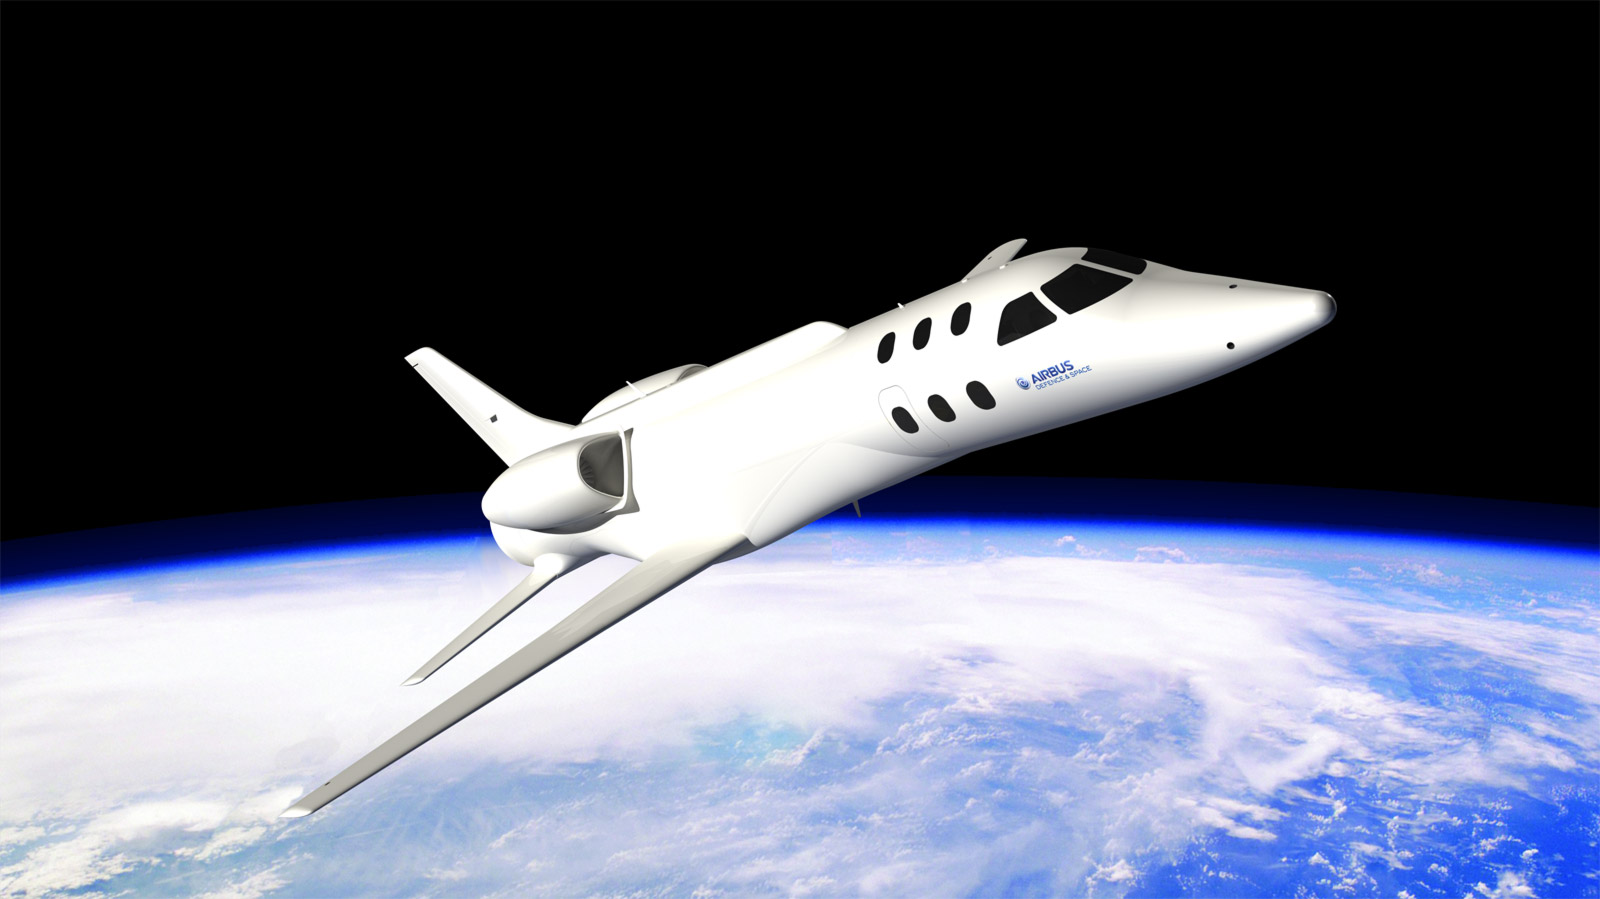 Le Spaceplane d'Airbus Espace dans sa dernière configuration. On remarque la disparition&nbsp;de l'empennage en canard et le nouveau dessin&nbsp;des ailes. © Airbus Espace